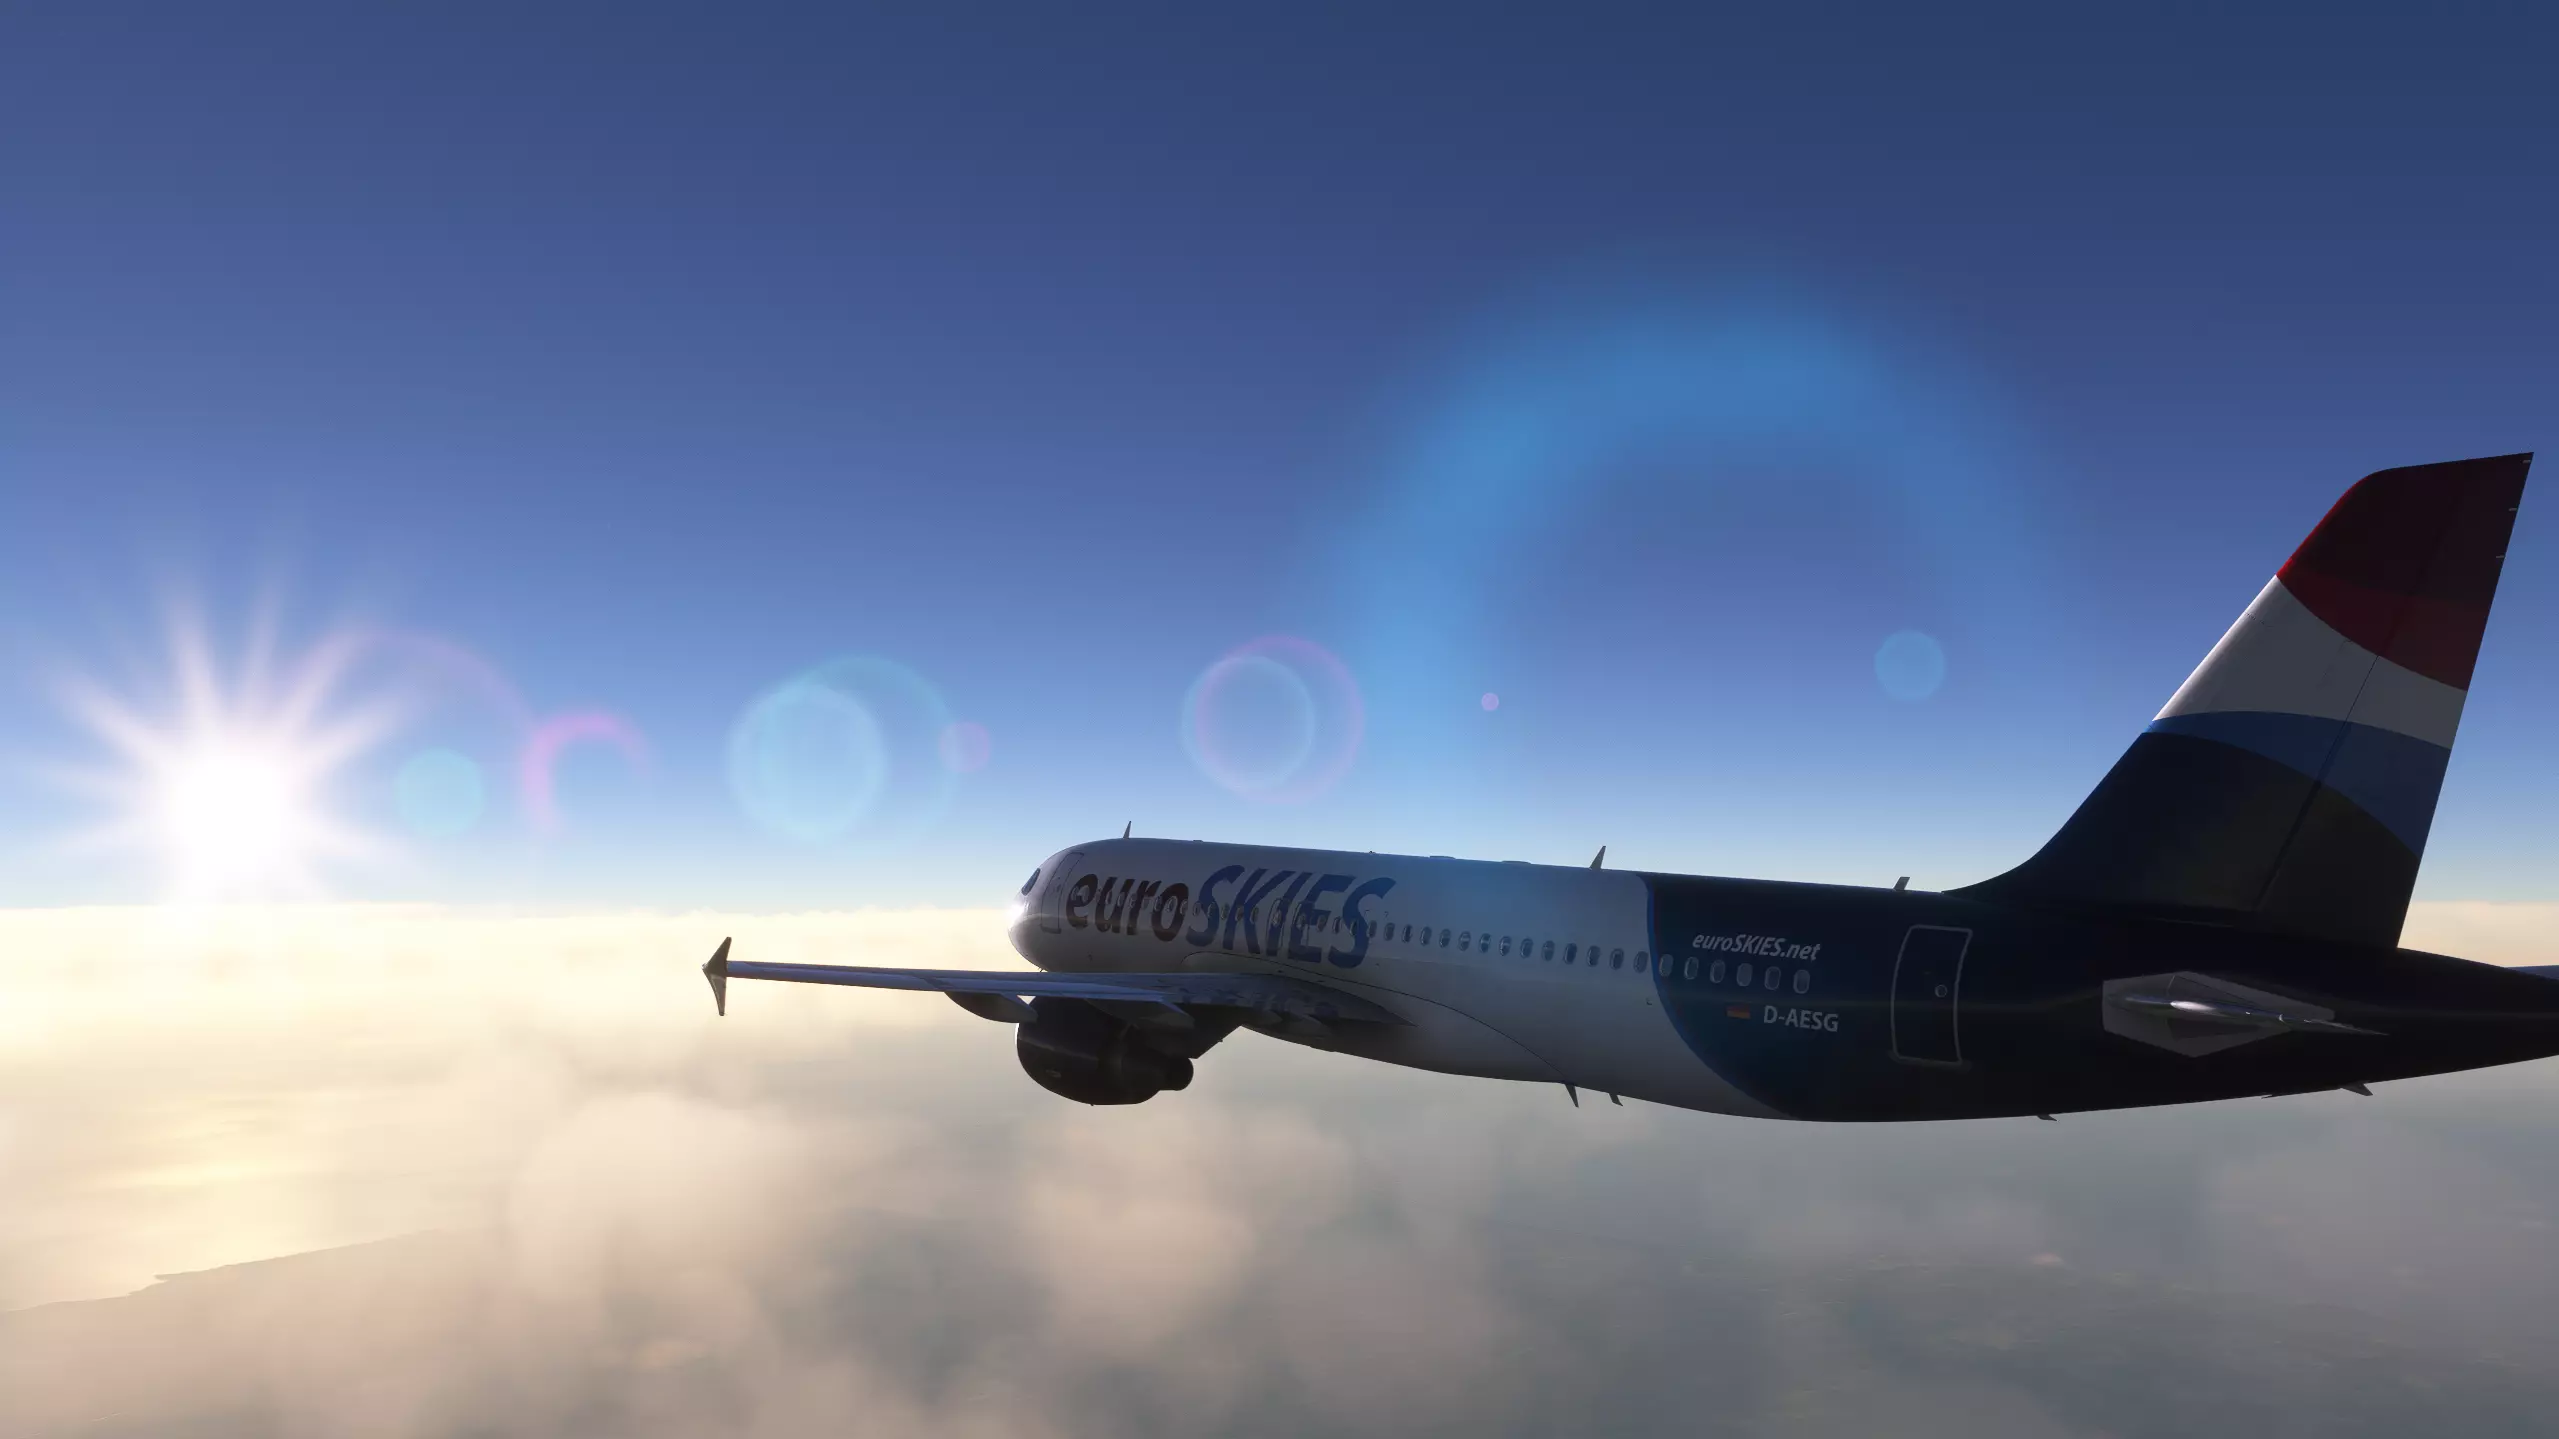 euroSKIES virtuelle Airline airbus A320 fliegt in die Sonne 